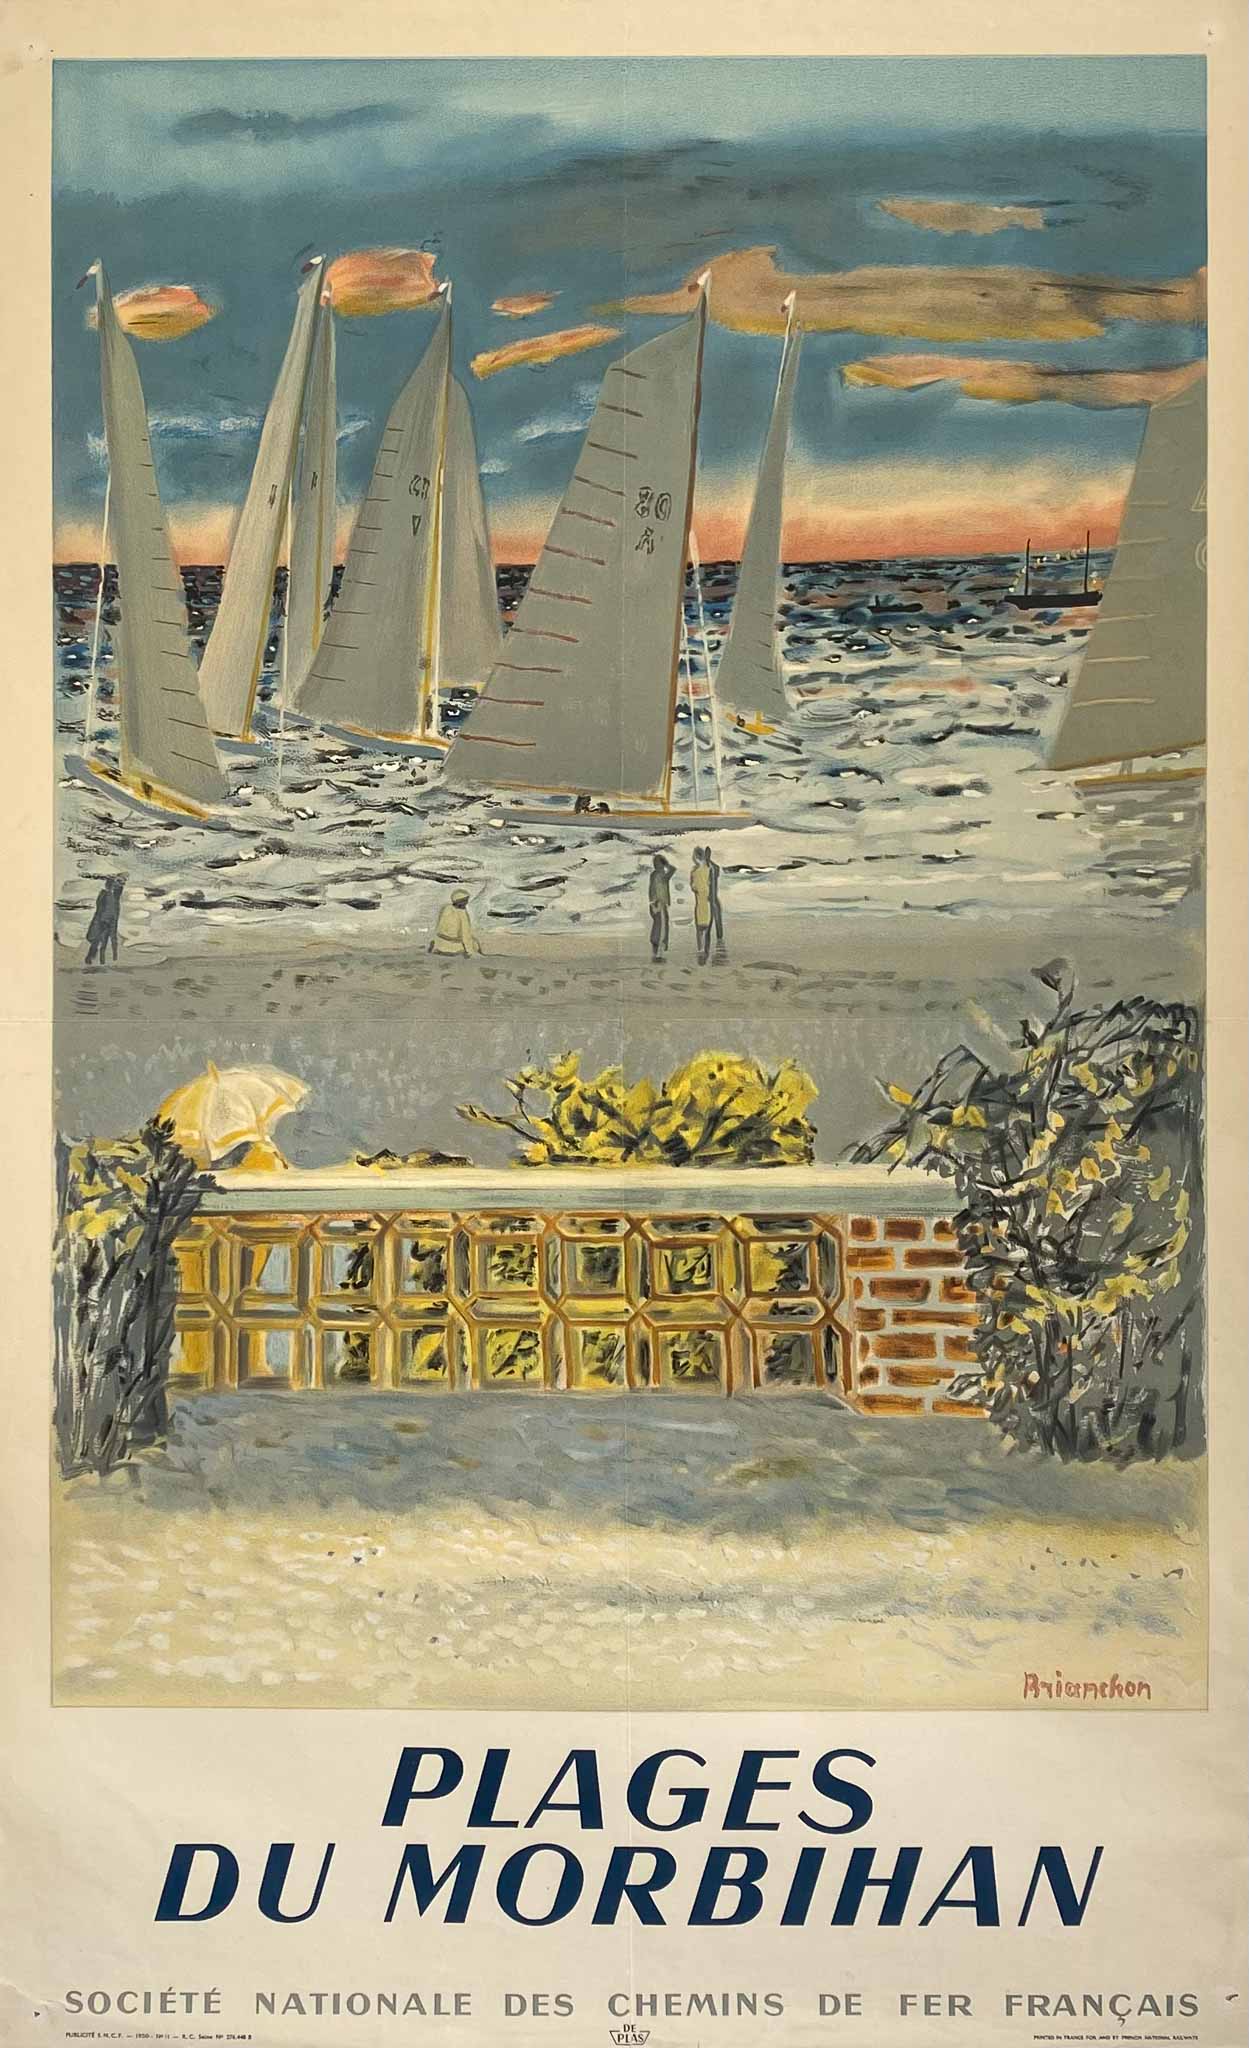 Affiche Plages du Morbihan par BRIANCHON, 1950